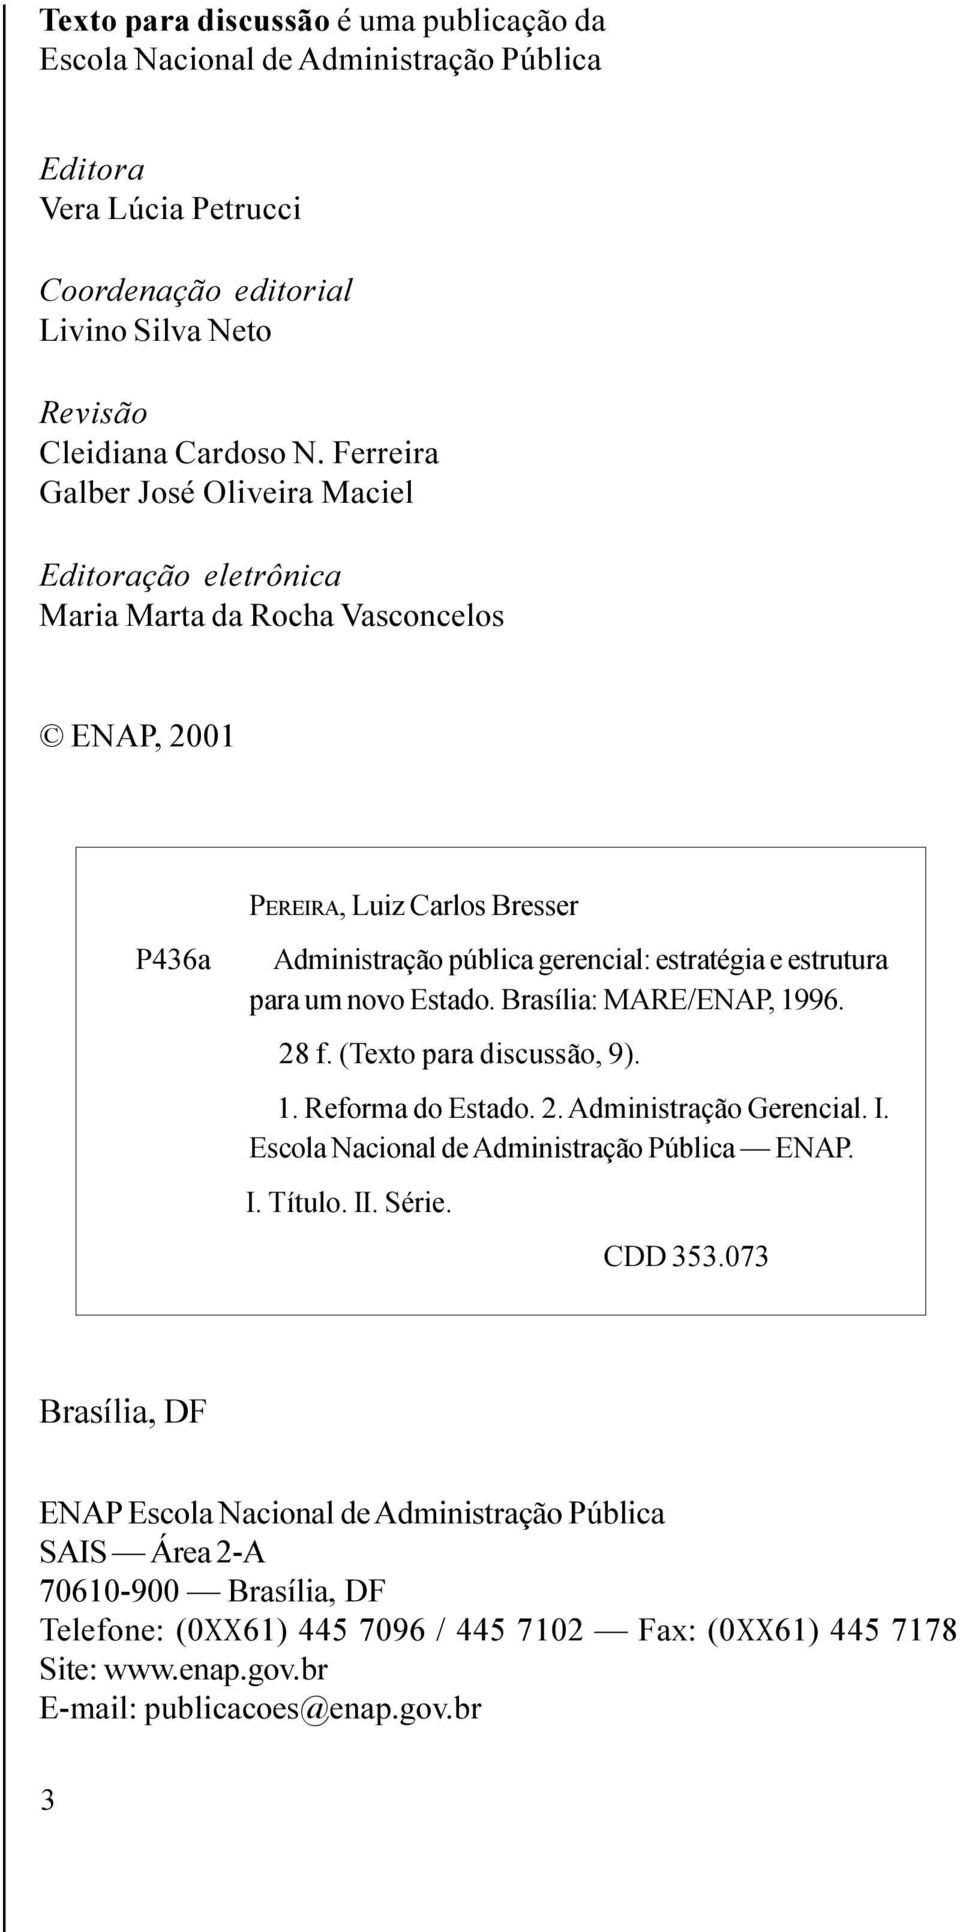 um novo Estado. Brasília: MARE/ENAP, 1996. 28 f. (Texto para discussão, 9). 1. Reforma do Estado. 2. Administração Gerencial. I. Escola Nacional de Administração Pública ENAP. I. Título. II. Série.